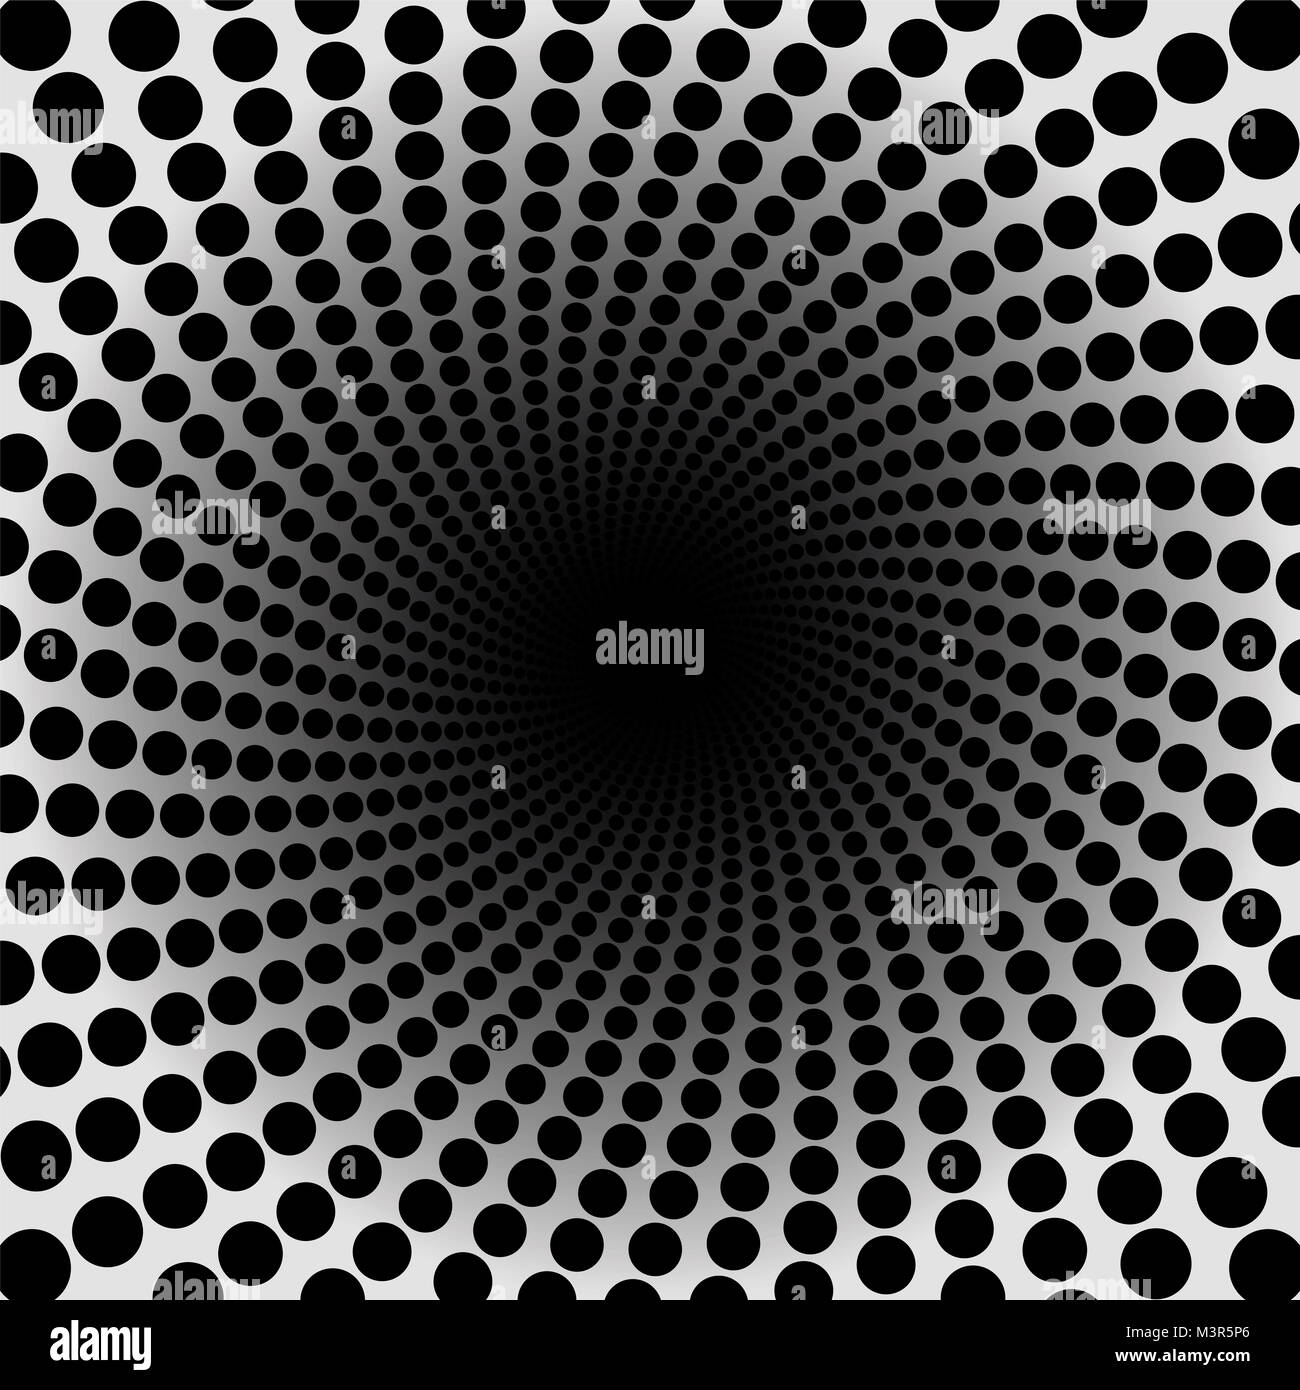 Patrón de espiral. Túnel con punteado negro oscuro en el centro - Ilustración de fondo circulares trenzados, hipnótica y psicodélica. Foto de stock